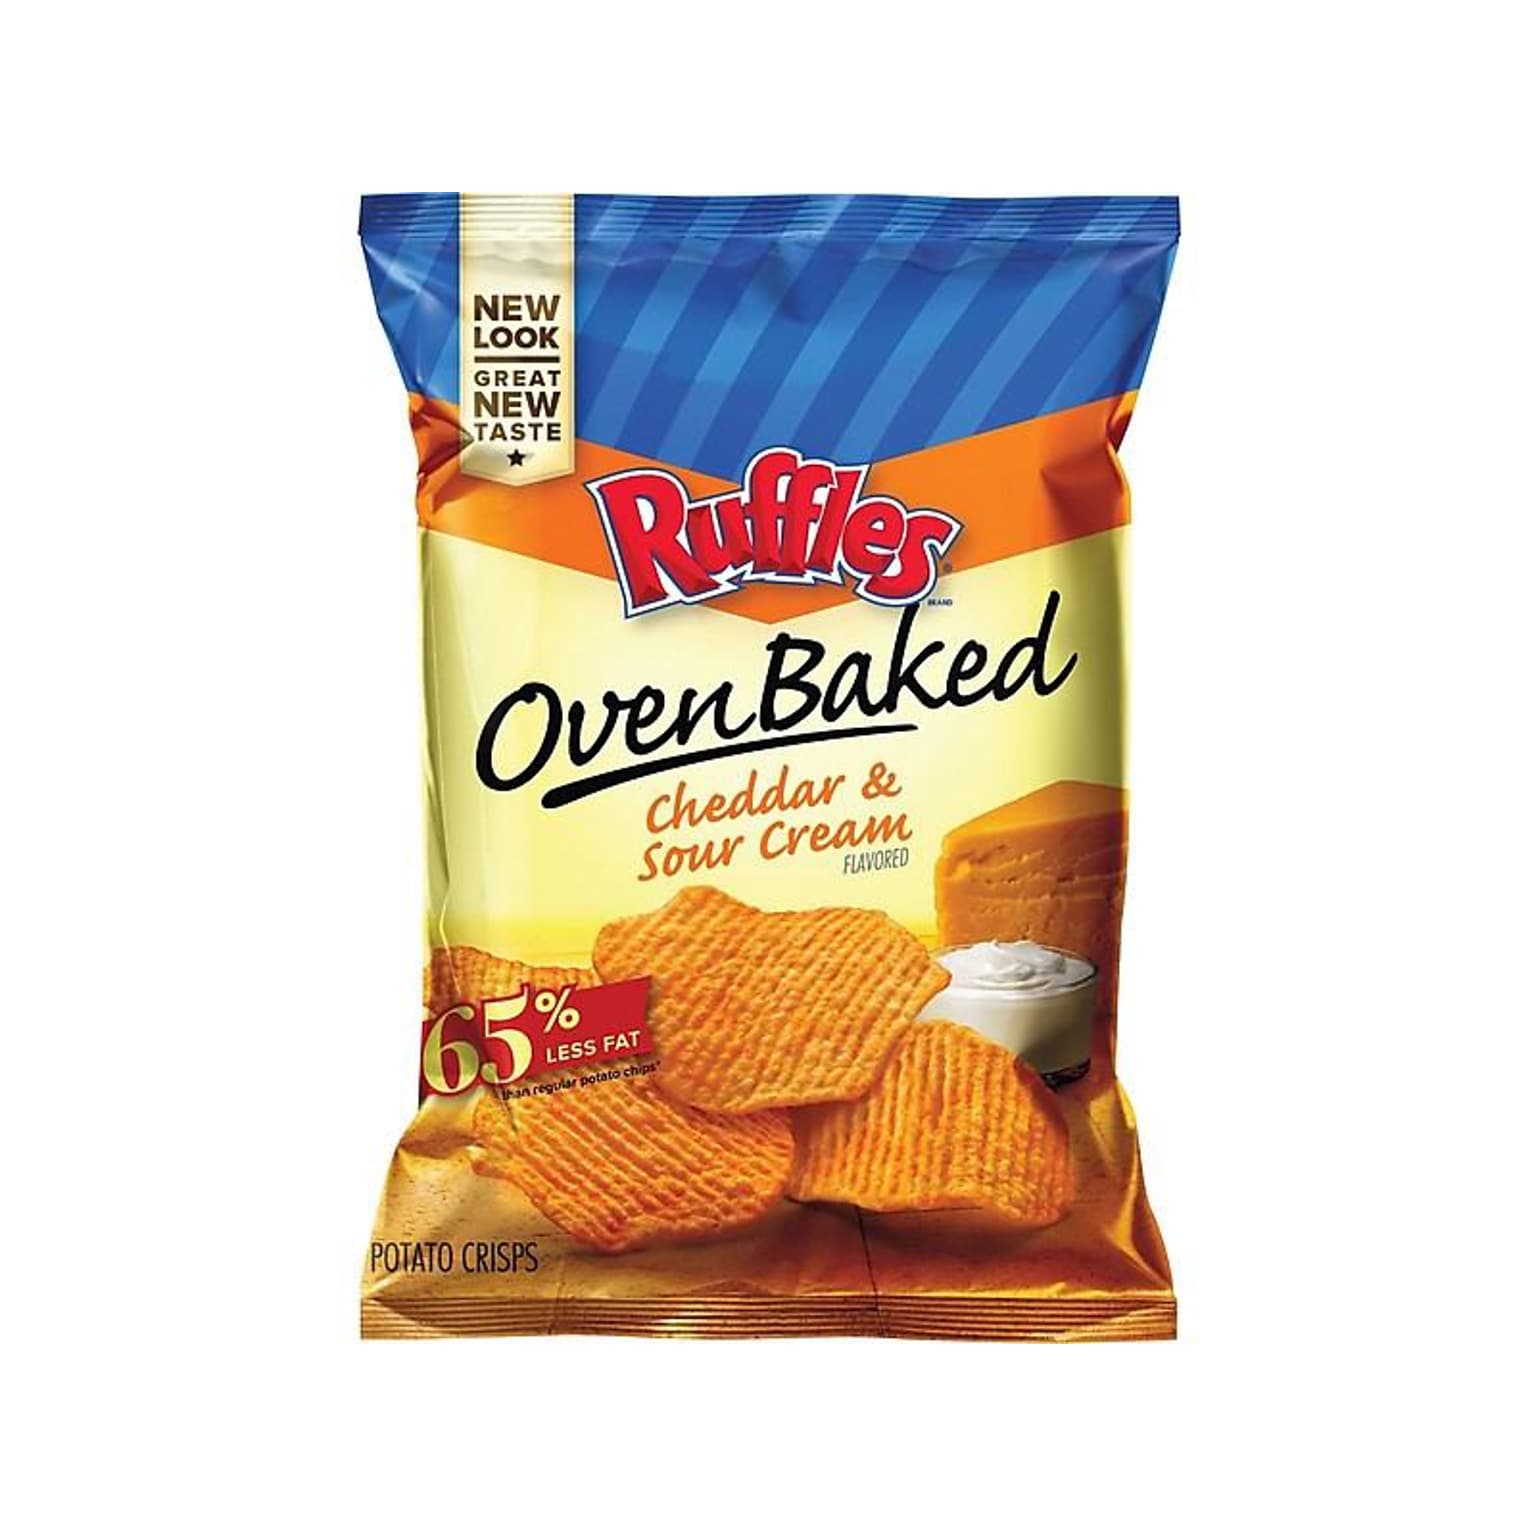 Ruffles Oven Baked Cheddar & Sour Cream Potato Chips, 1.13 oz. Bags, 64 Bags/Carton (44400)